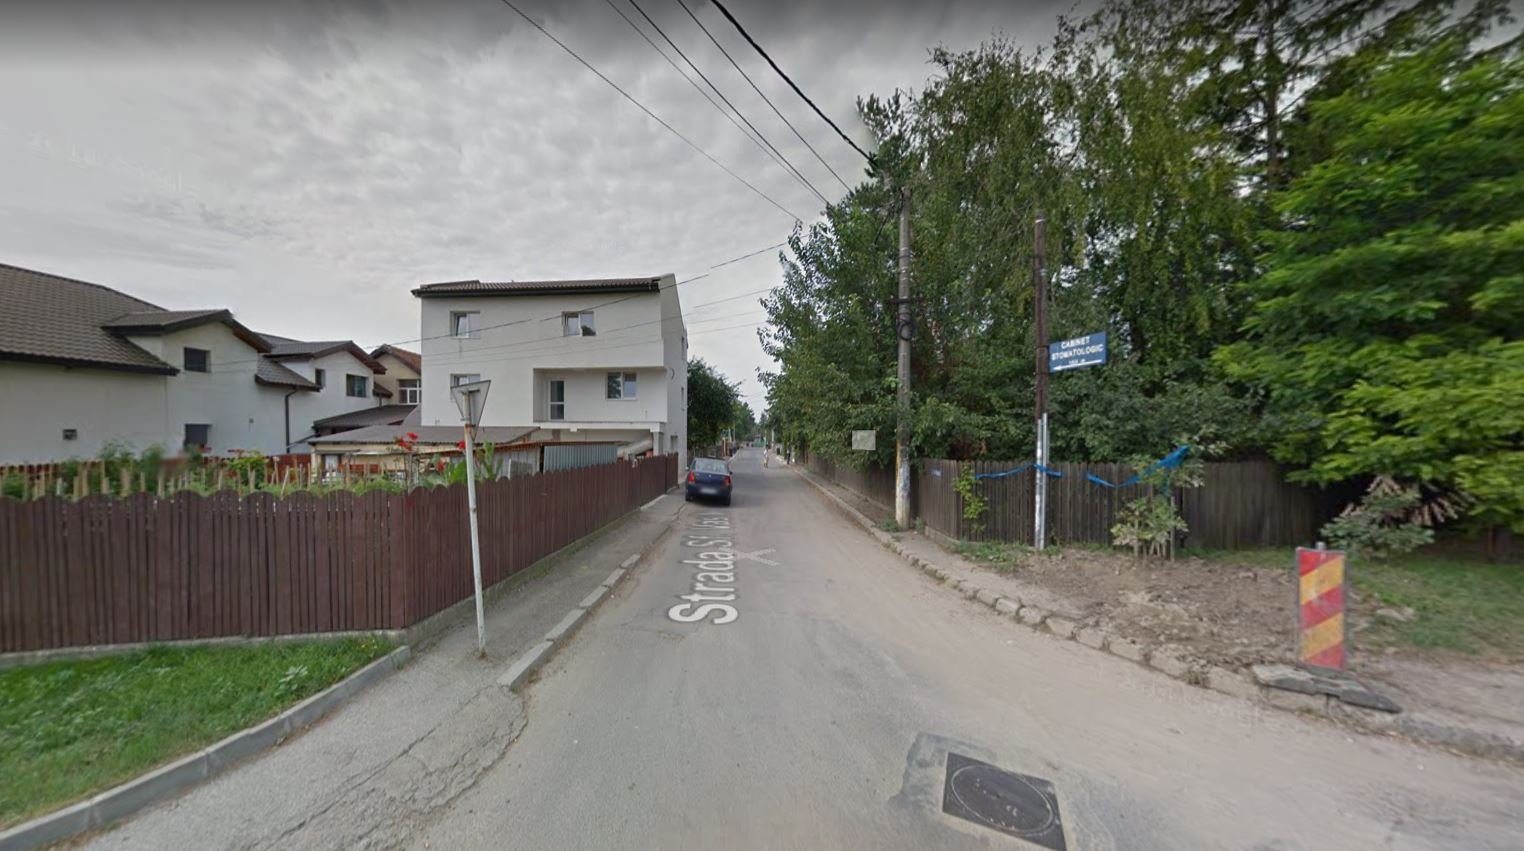  Reparații timp de trei zile la carosabilul de pe strada Sf. Vasile din Iași